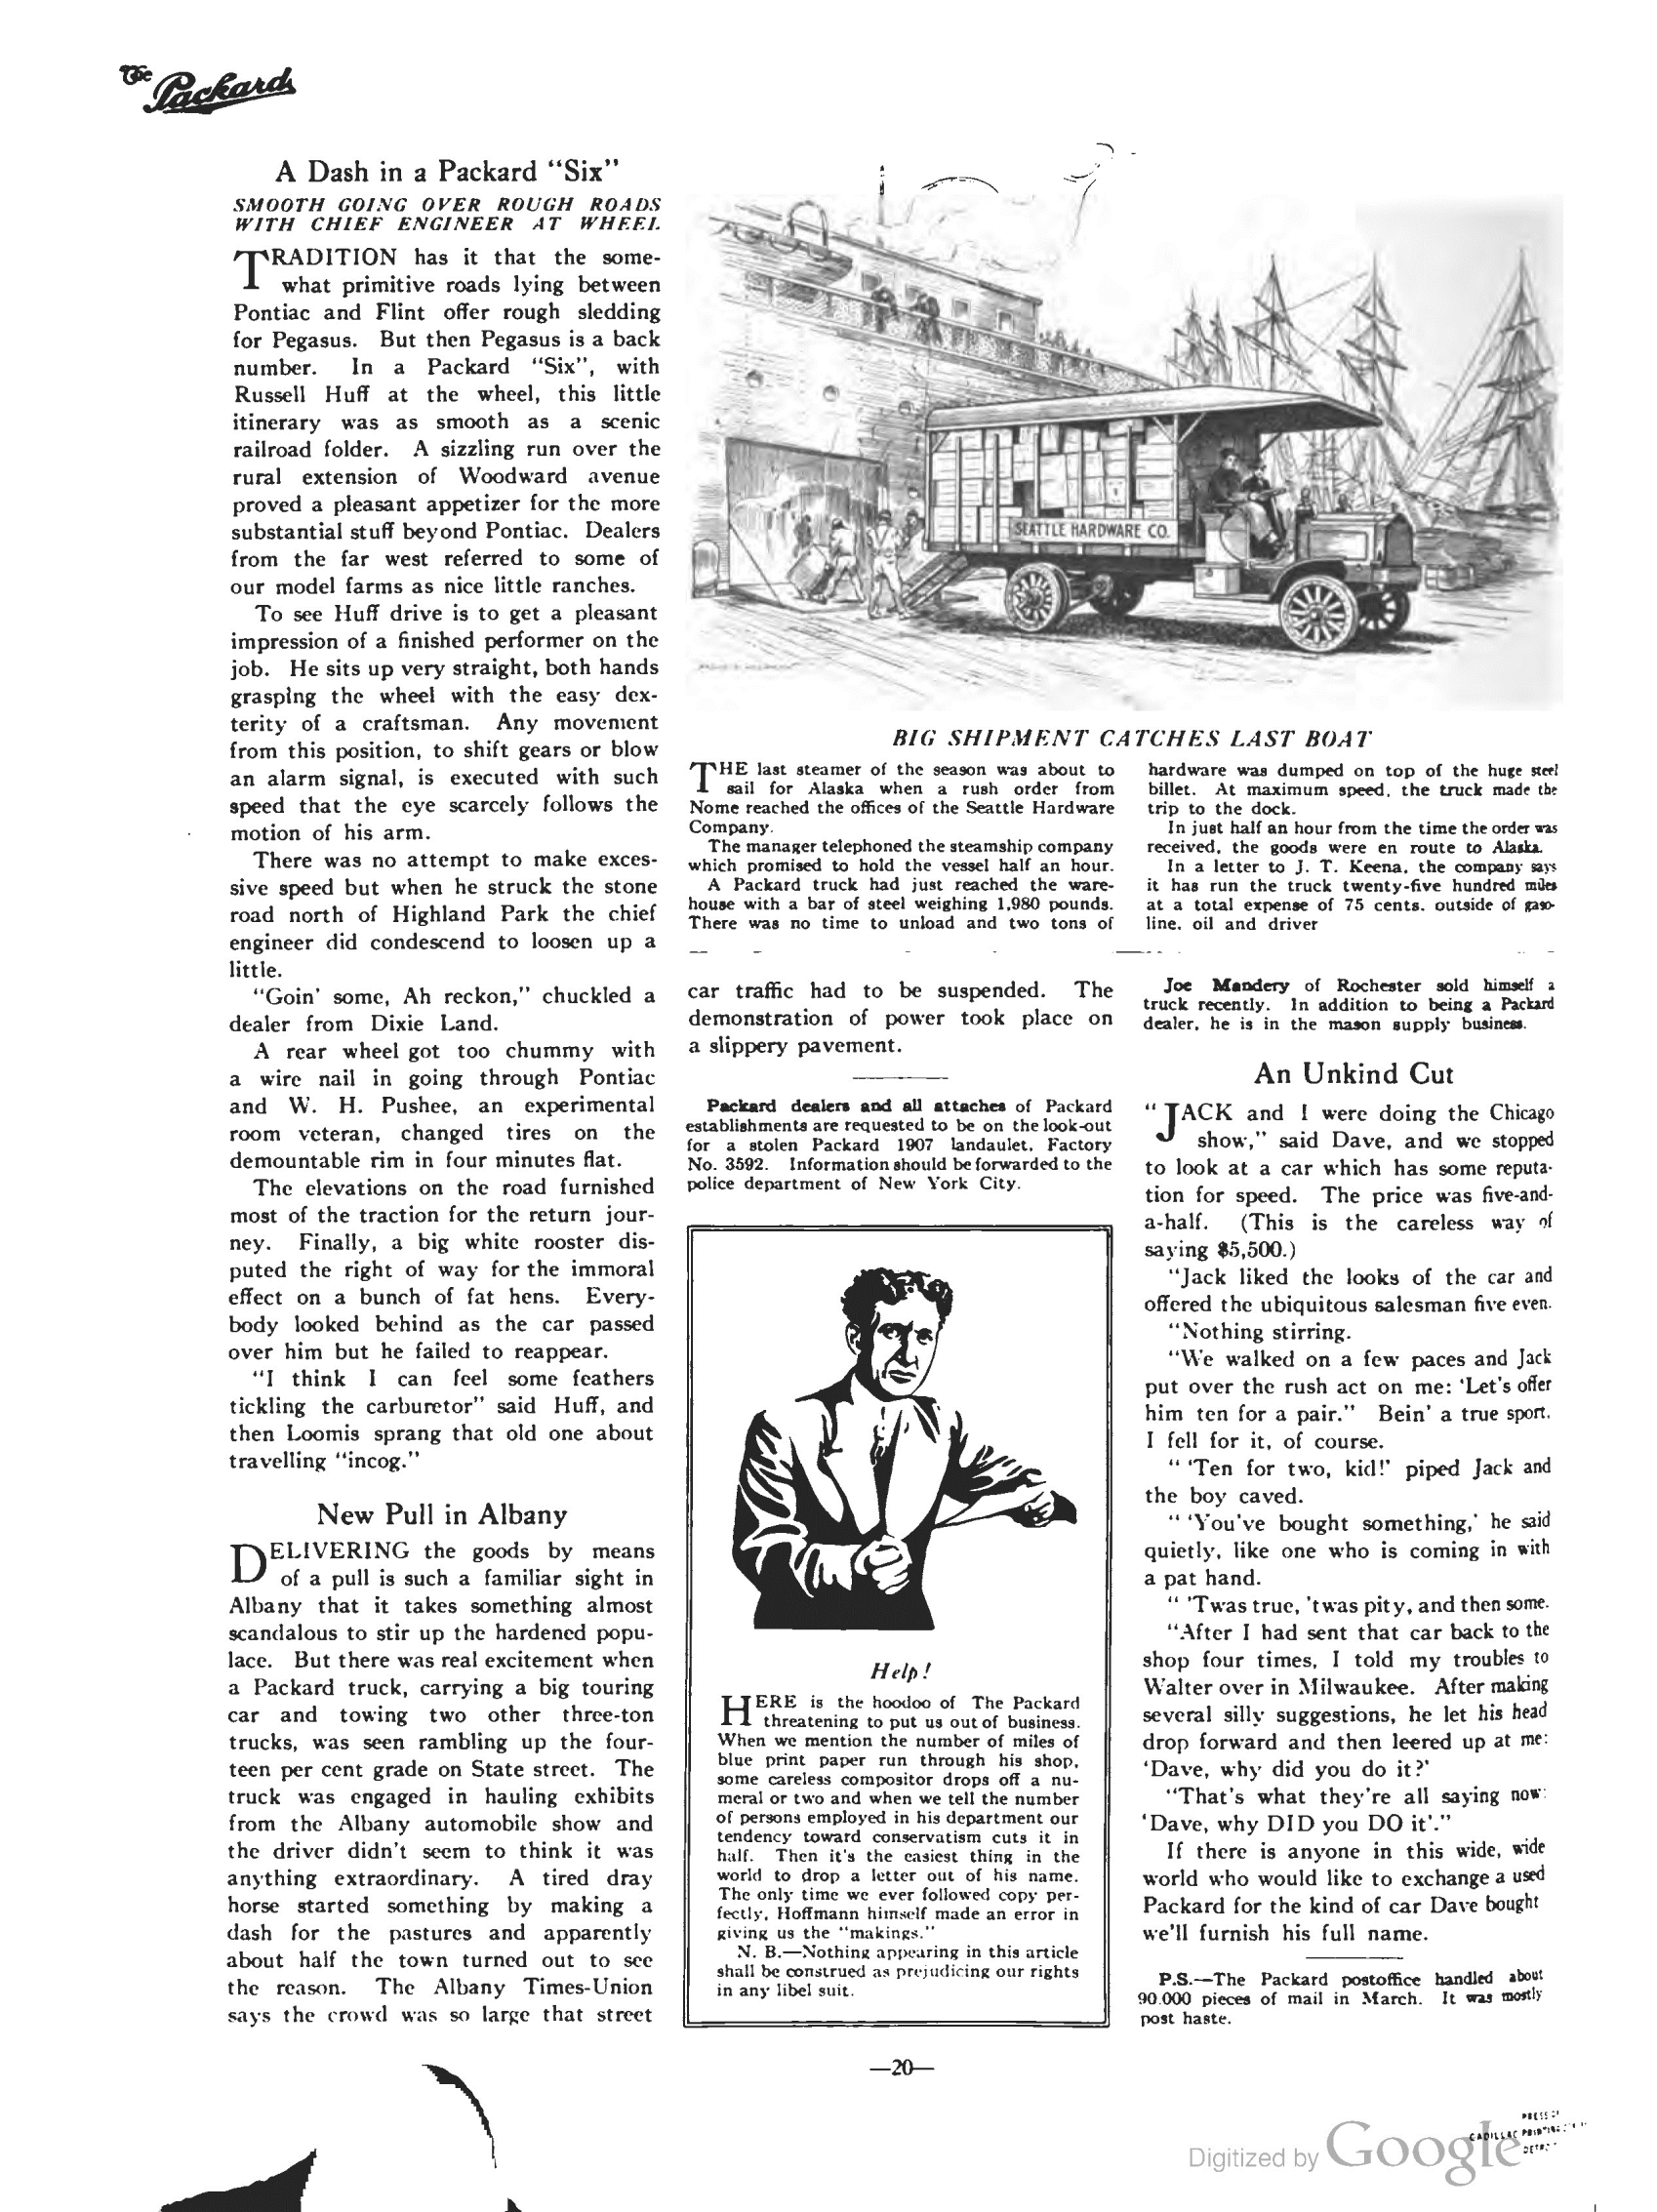 1911_The_Packard_Newsletter-082